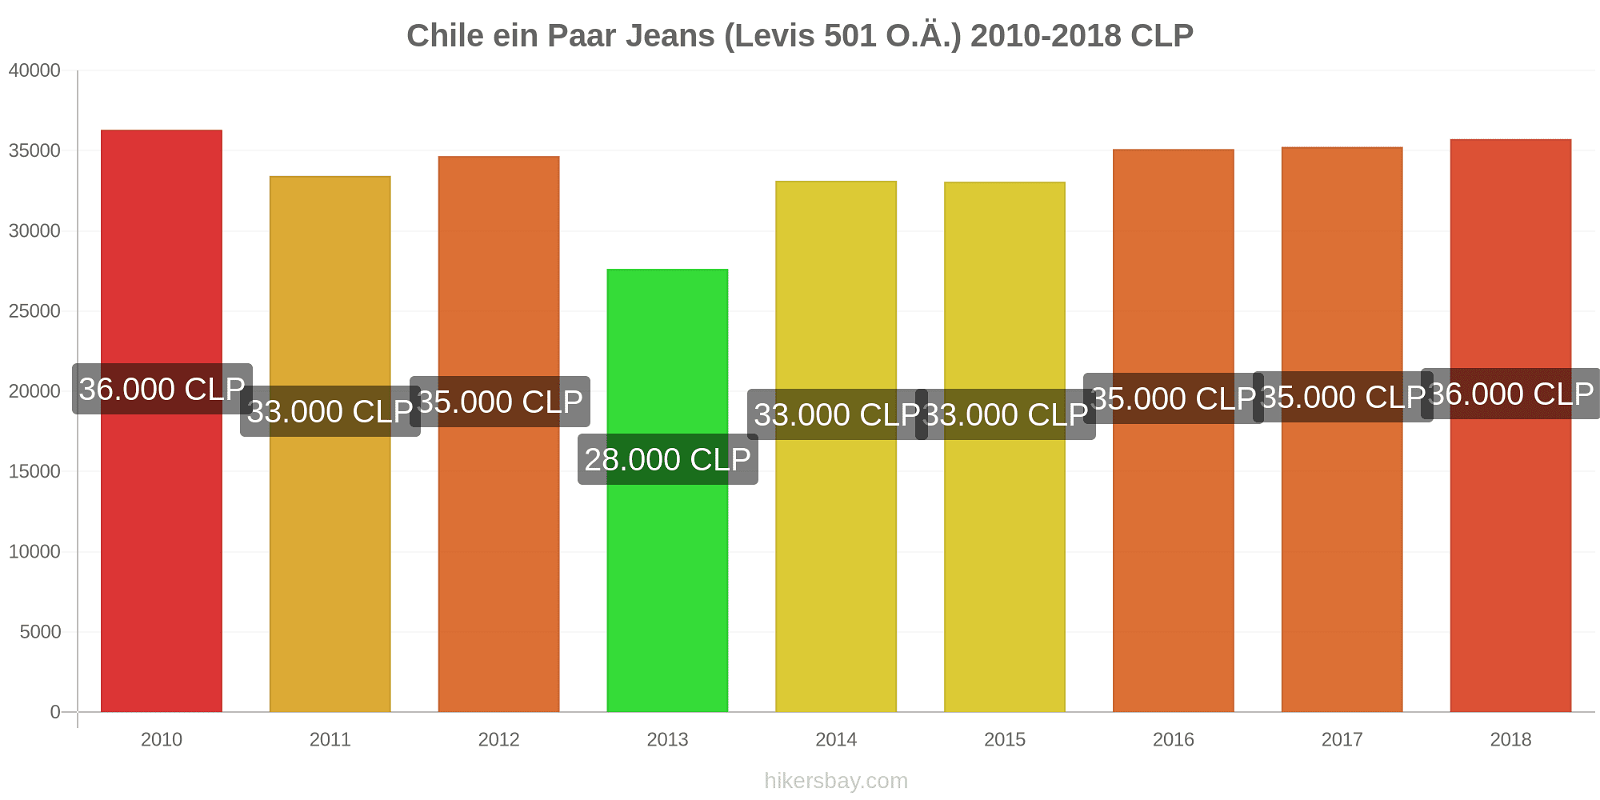 Chile Preisänderungen 1 Paar Jeans (Levis 501 oder ähnliche) hikersbay.com